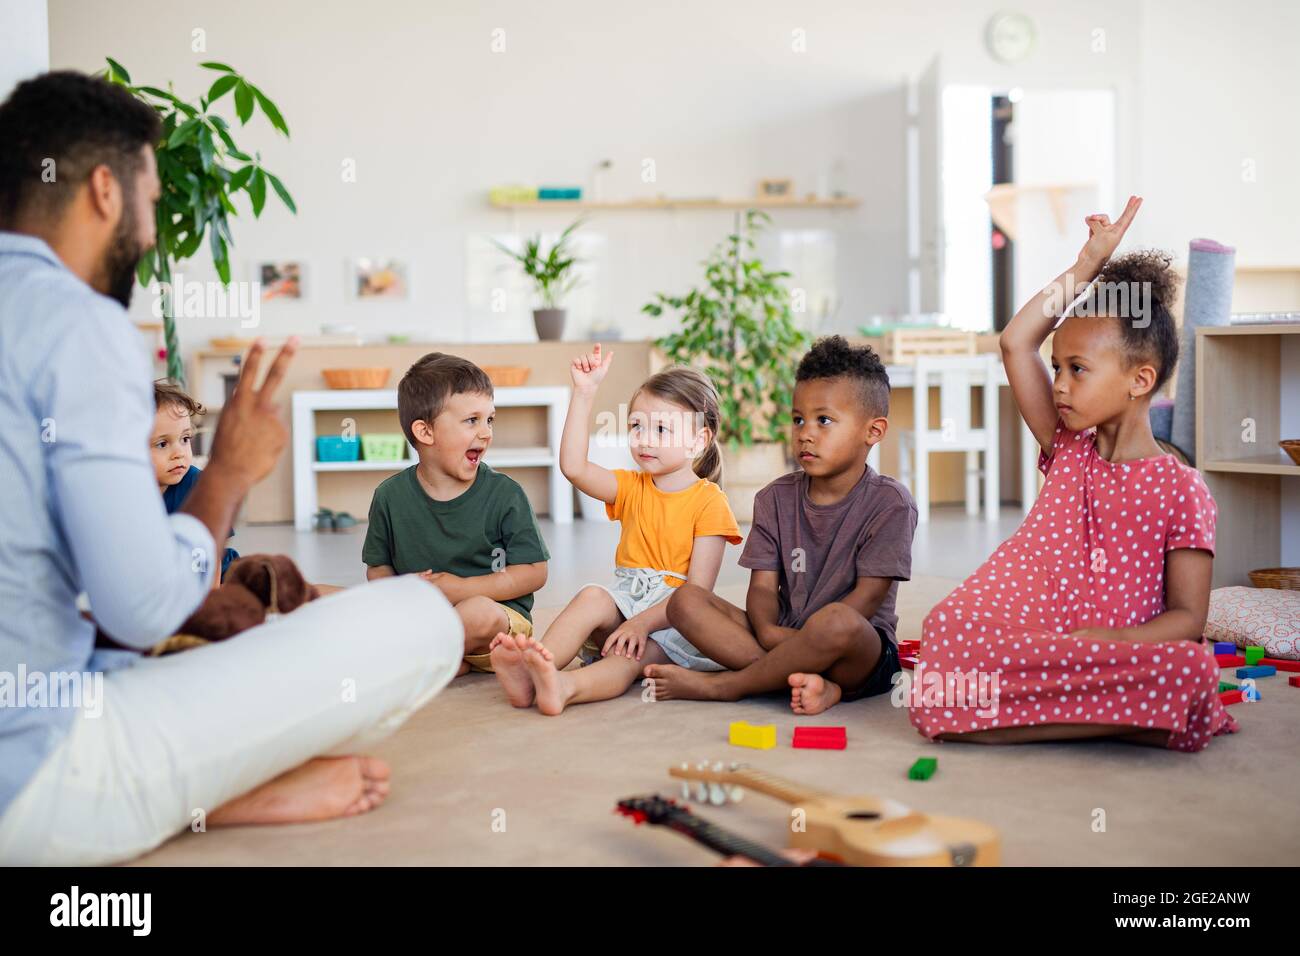 Gruppe von kleinen Kindergartenkindern, die im Klassenzimmer auf dem Boden sitzen. Stockfoto